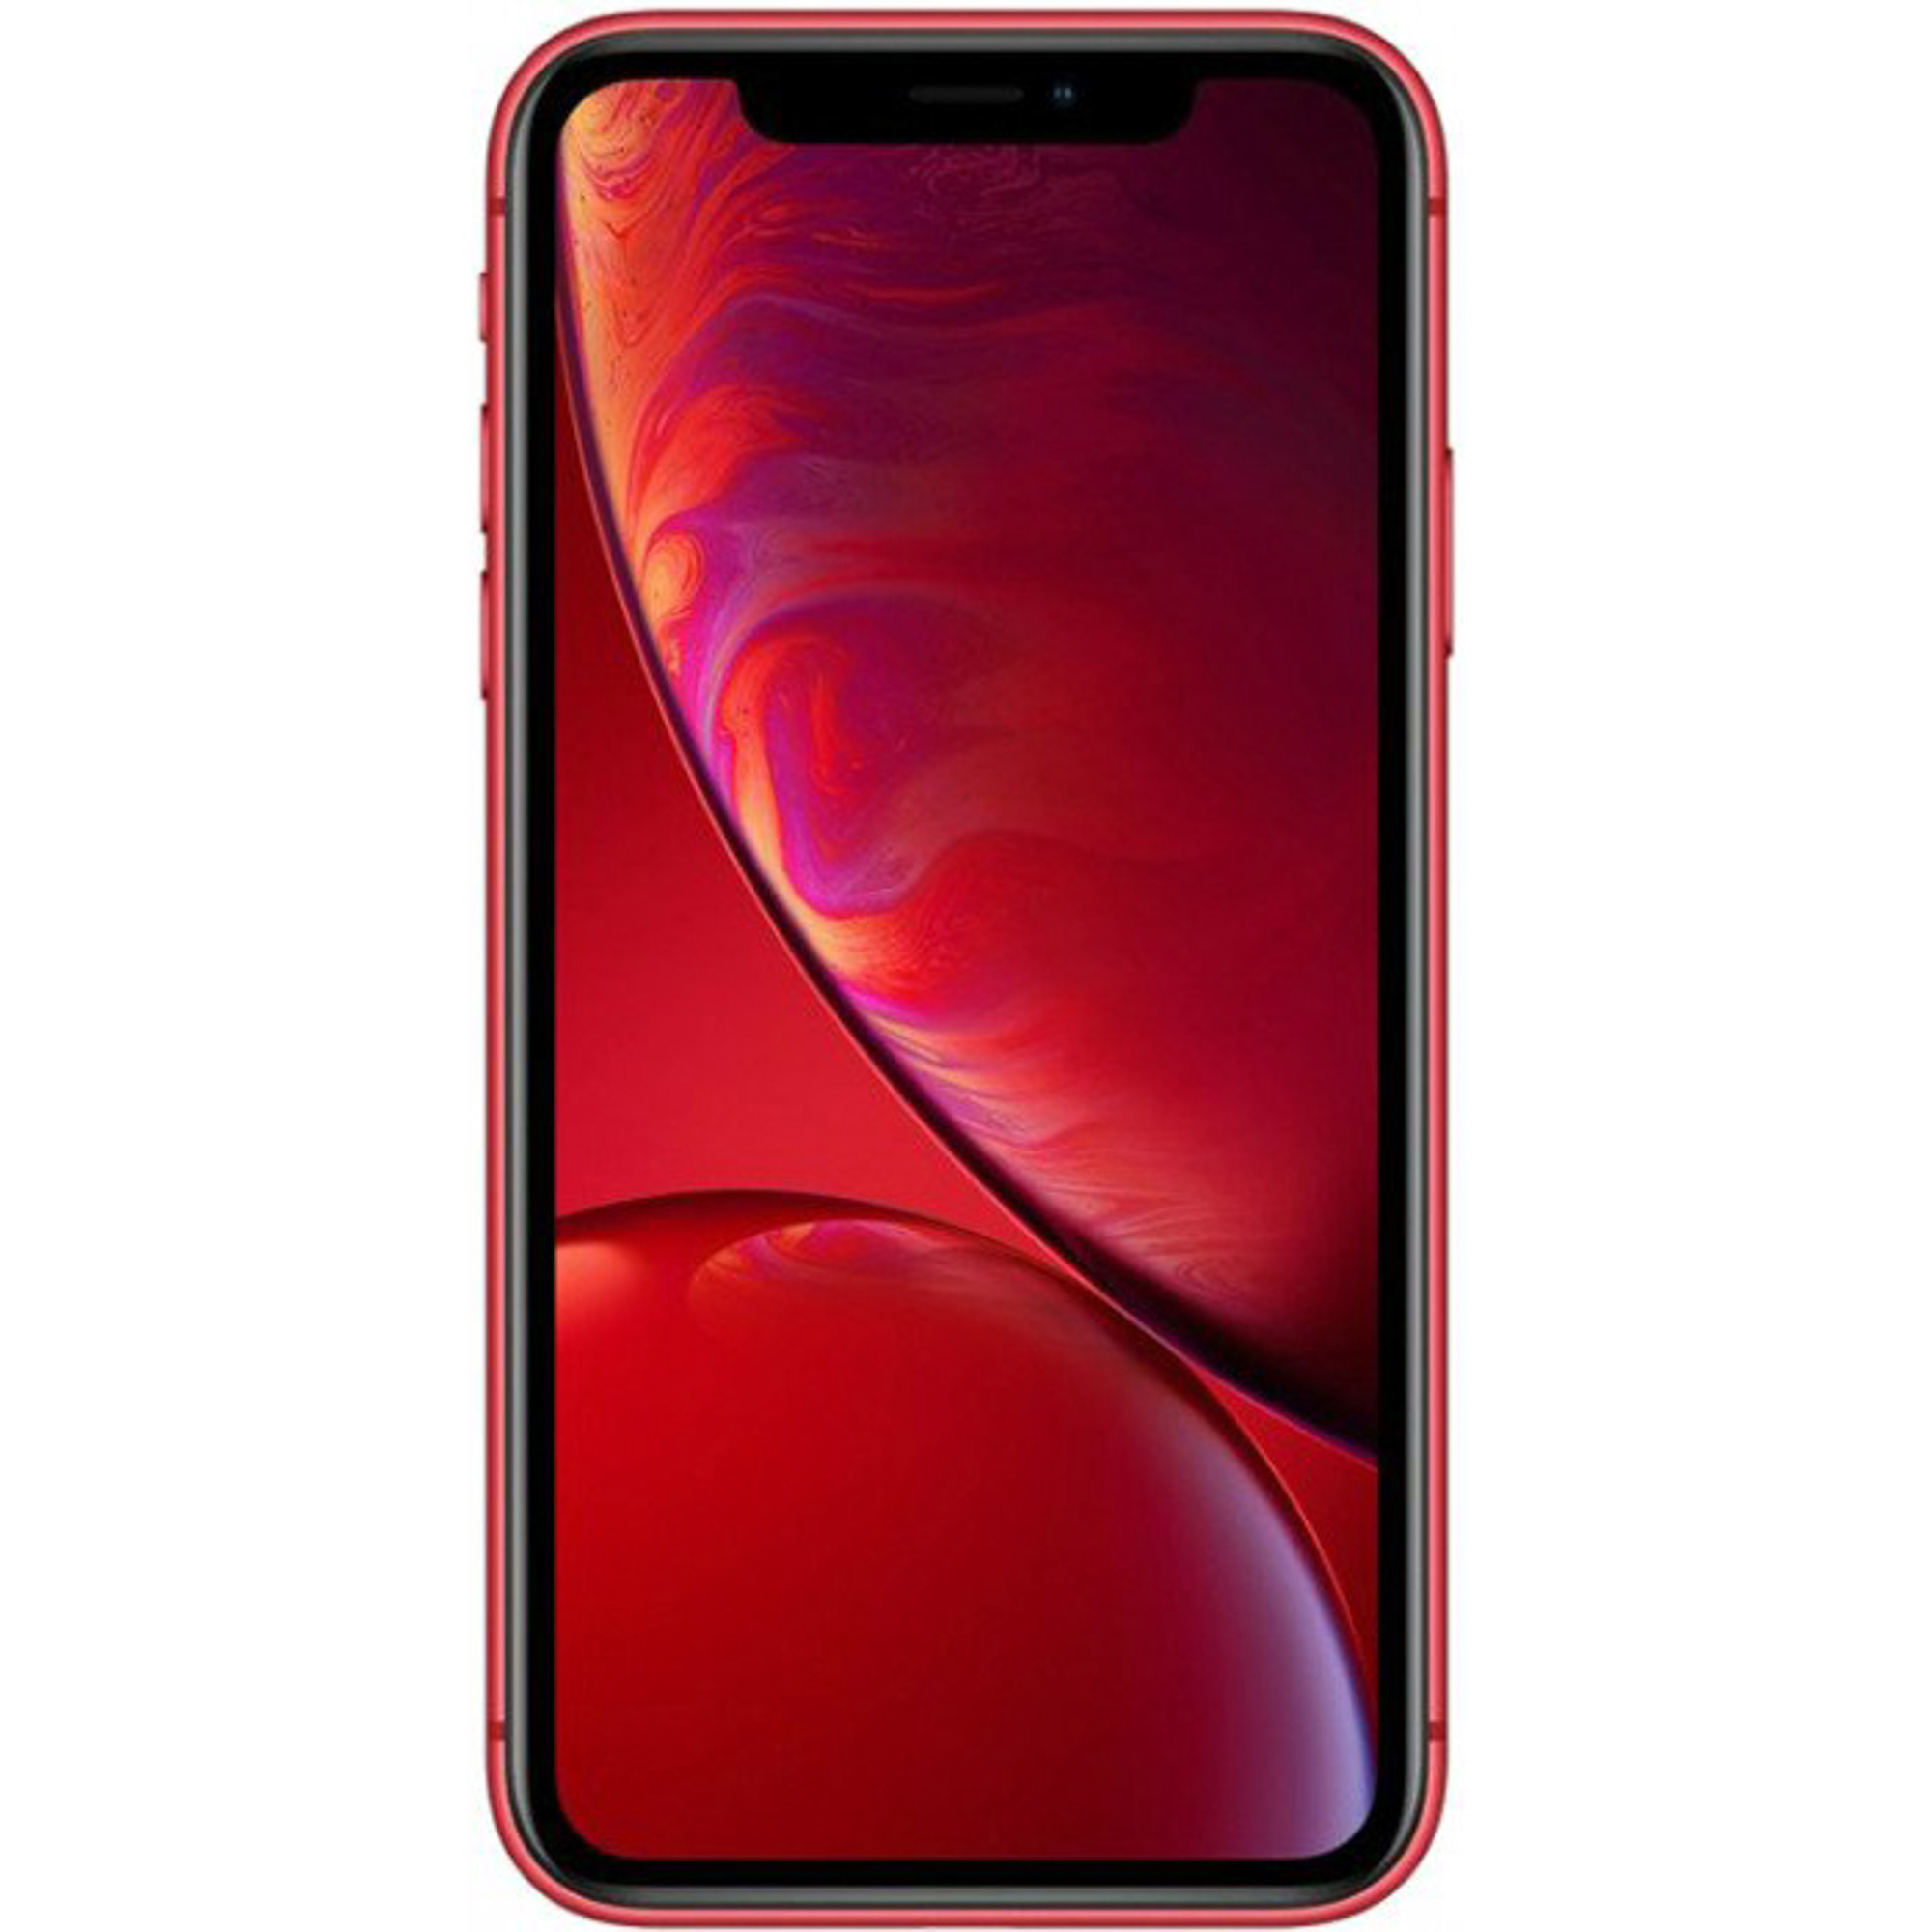 Смартфон Apple iPhone XR 64Gb Red, цвет красный MRY62RU/A A12 Bionic - фото 1